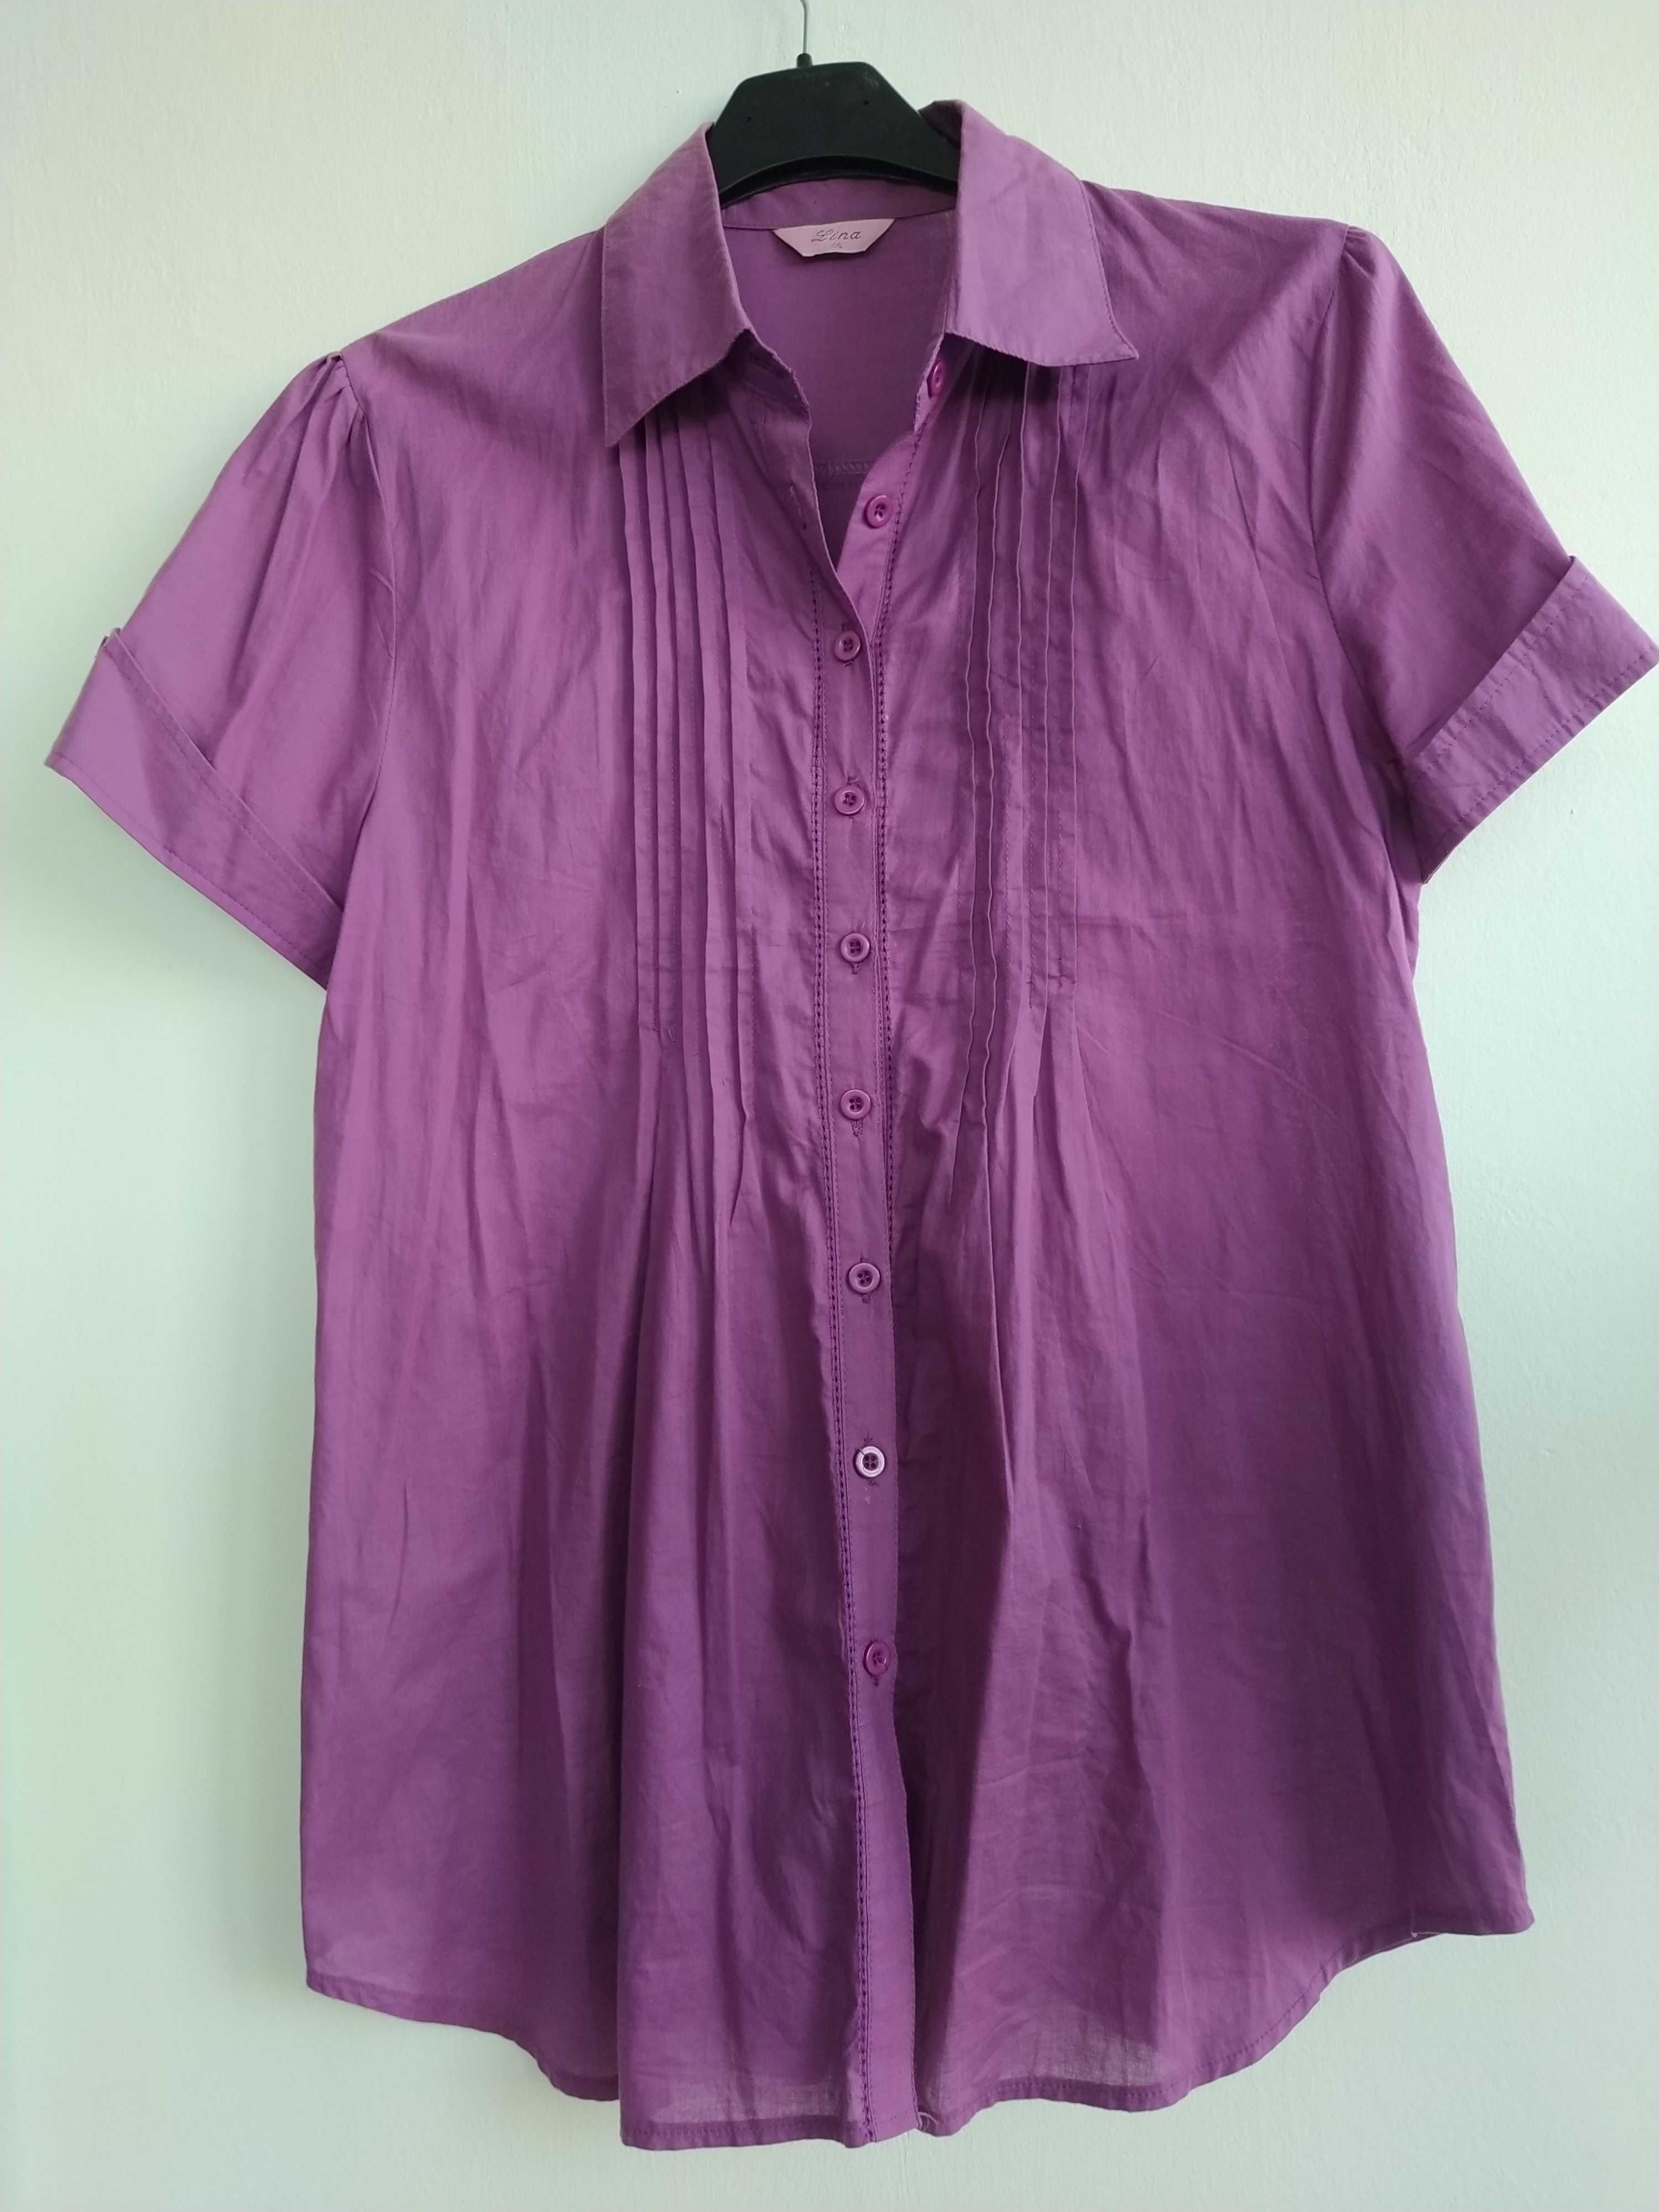 Blusa violeta, alegre e jovial - Tamanho XL / XXL